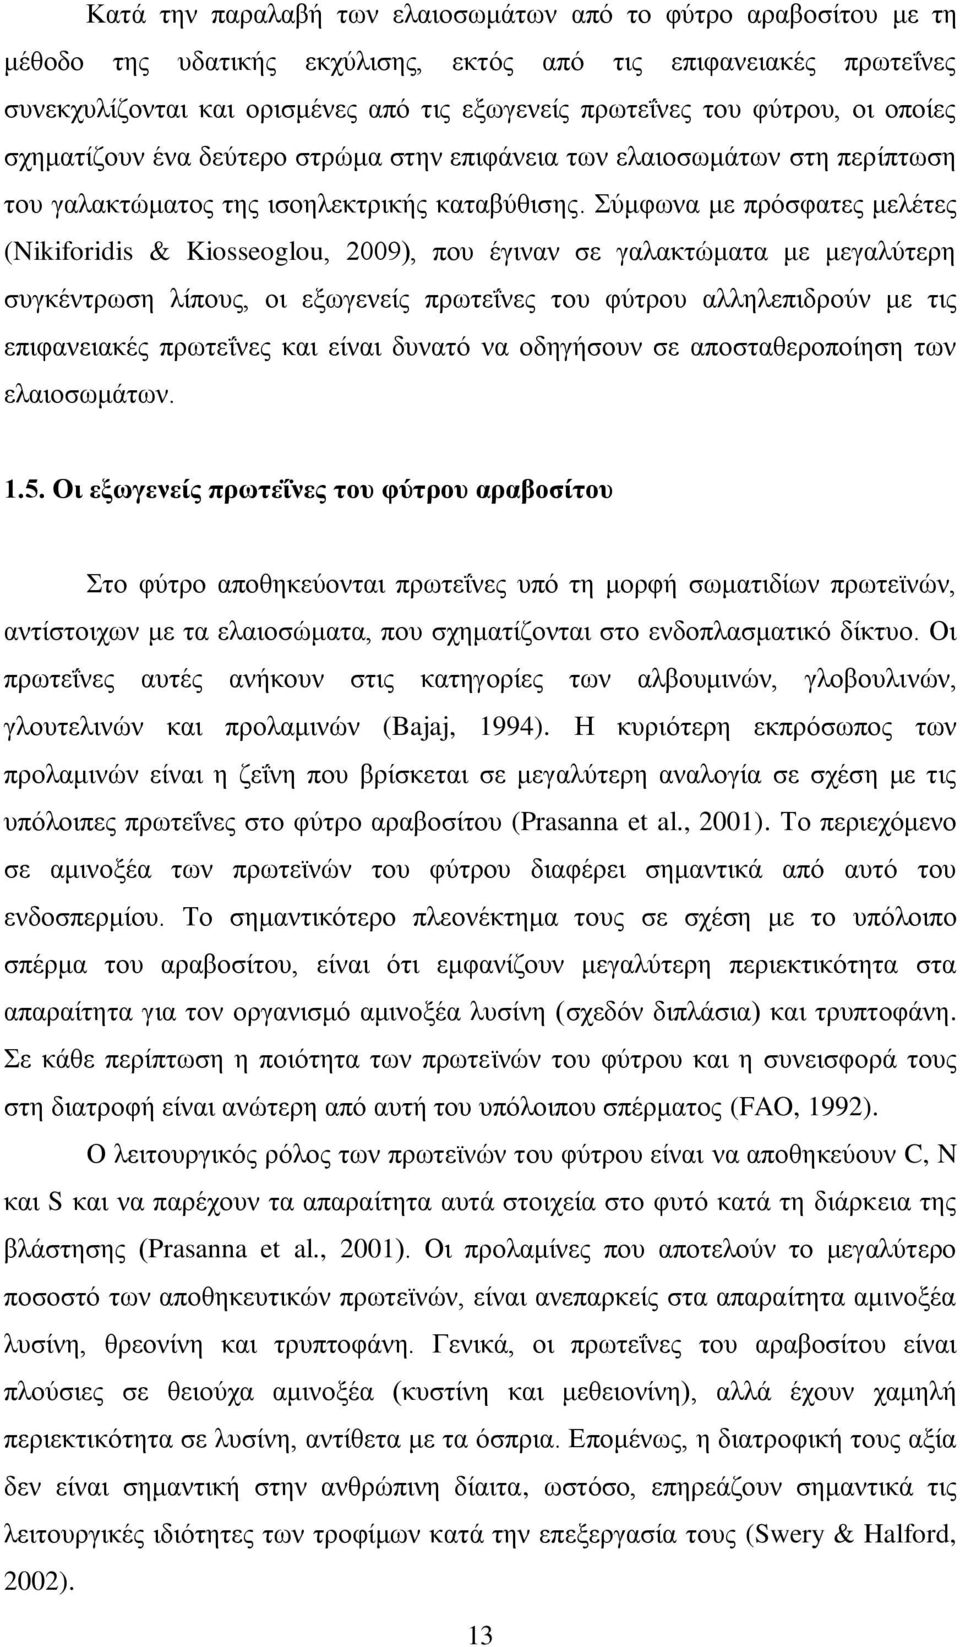 Σφιθςκα ιε πνυζθαηεξ ιεθέηεξ (Nikiforidis & Kiosseoglou, 2009), πμο έβζκακ ζε βαθαηηχιαηα ιε ιεβαθφηενδ ζοβηέκηνςζδ θίπμοξ, μζ ελςβεκείξ πνςηεΐκεξ ημο θφηνμο αθθδθεπζδνμφκ ιε ηζξ επζθακεζαηέξ